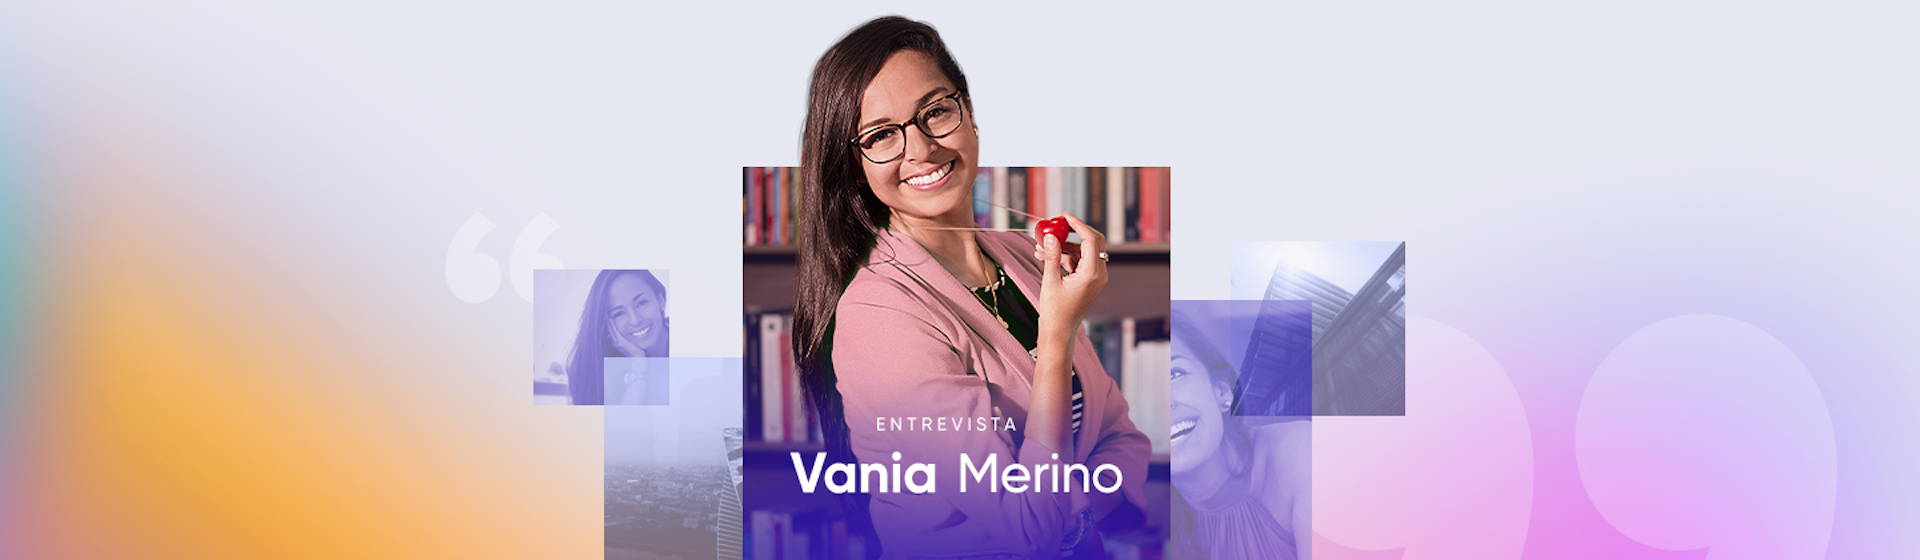 Vania Merino: "Dentro de toda adversidad, hay una gran oportunidad"